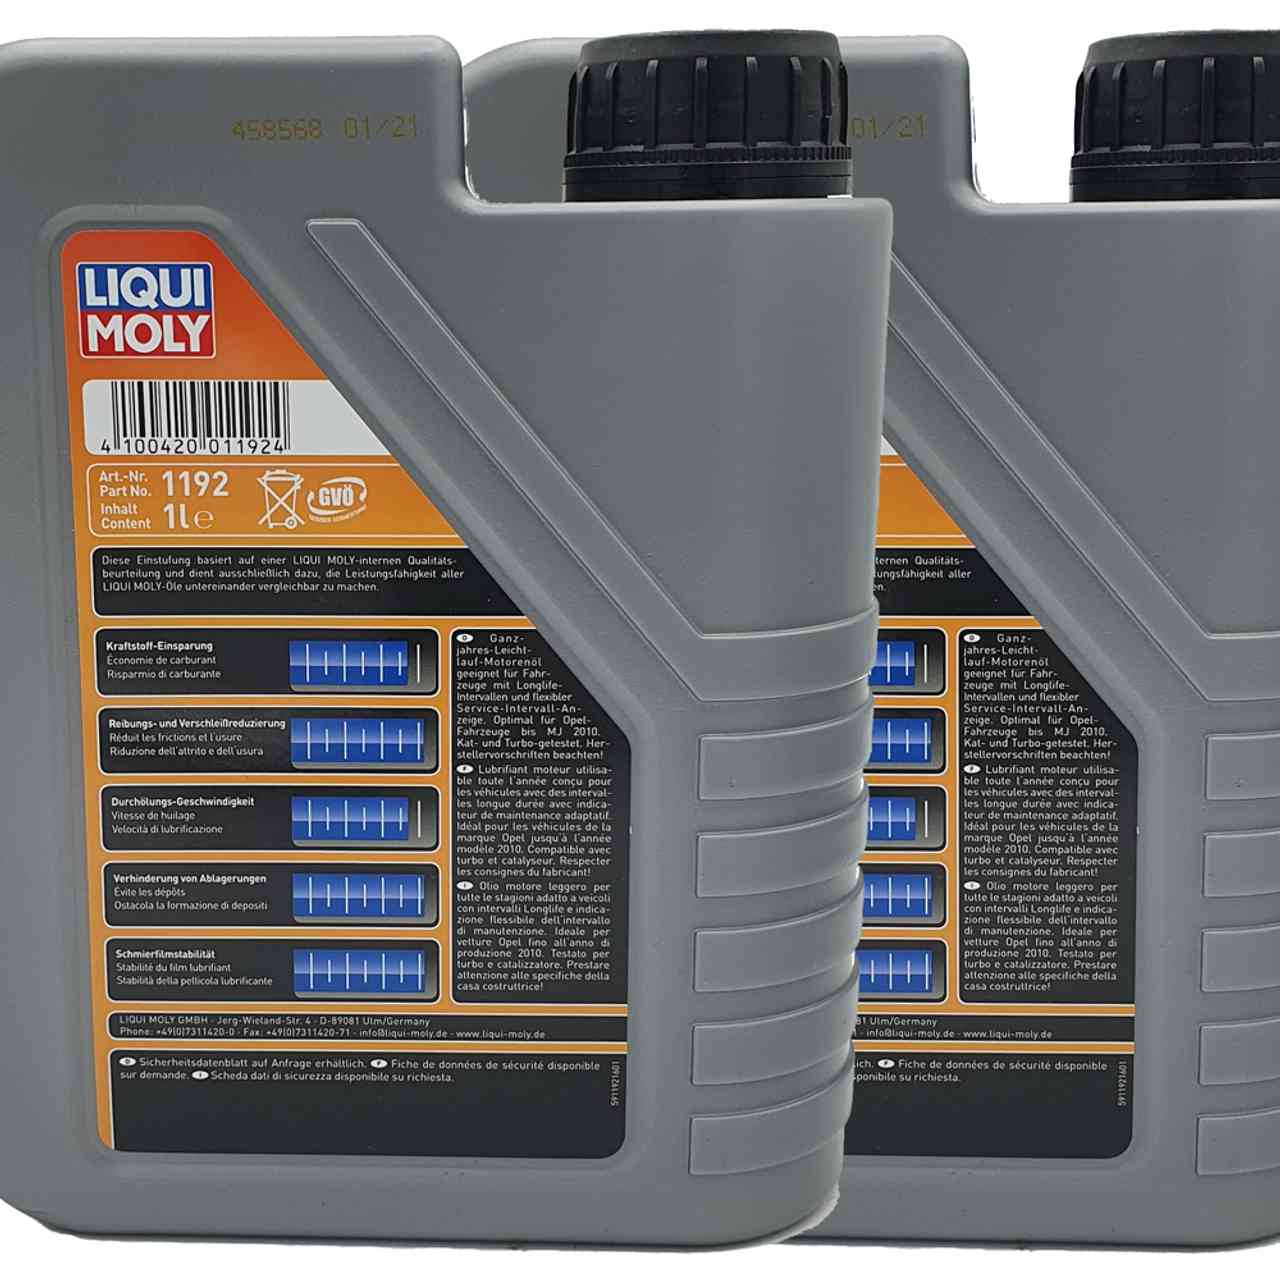 Liqui Moly Special Tec LL 5W-30 2x1 Liter